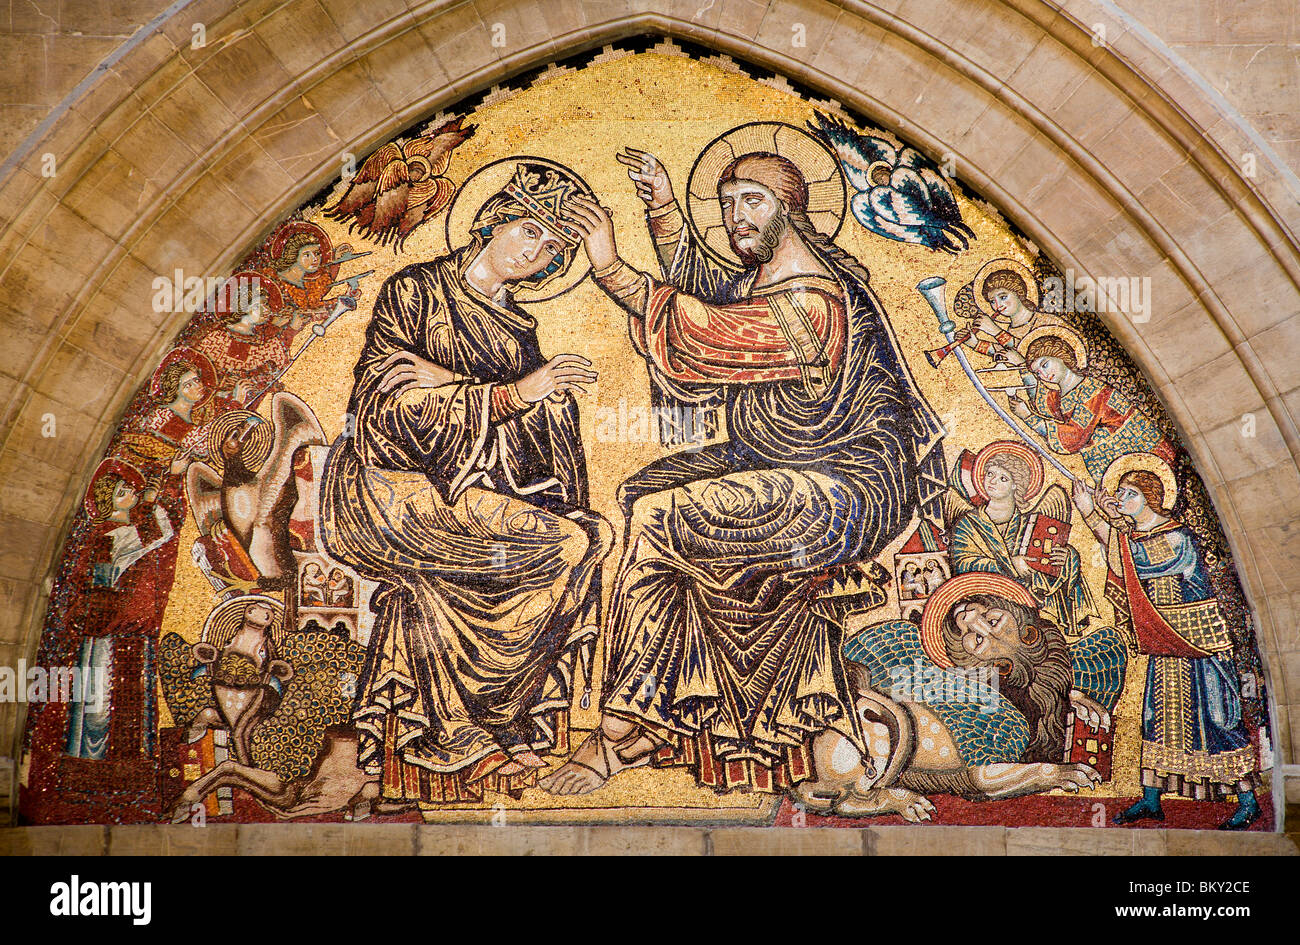 Gesù Cristo e incoronazione di Maria Santissima - mosaico dal duomo di Firenze di Santa Maria del Fiore - interno Foto Stock